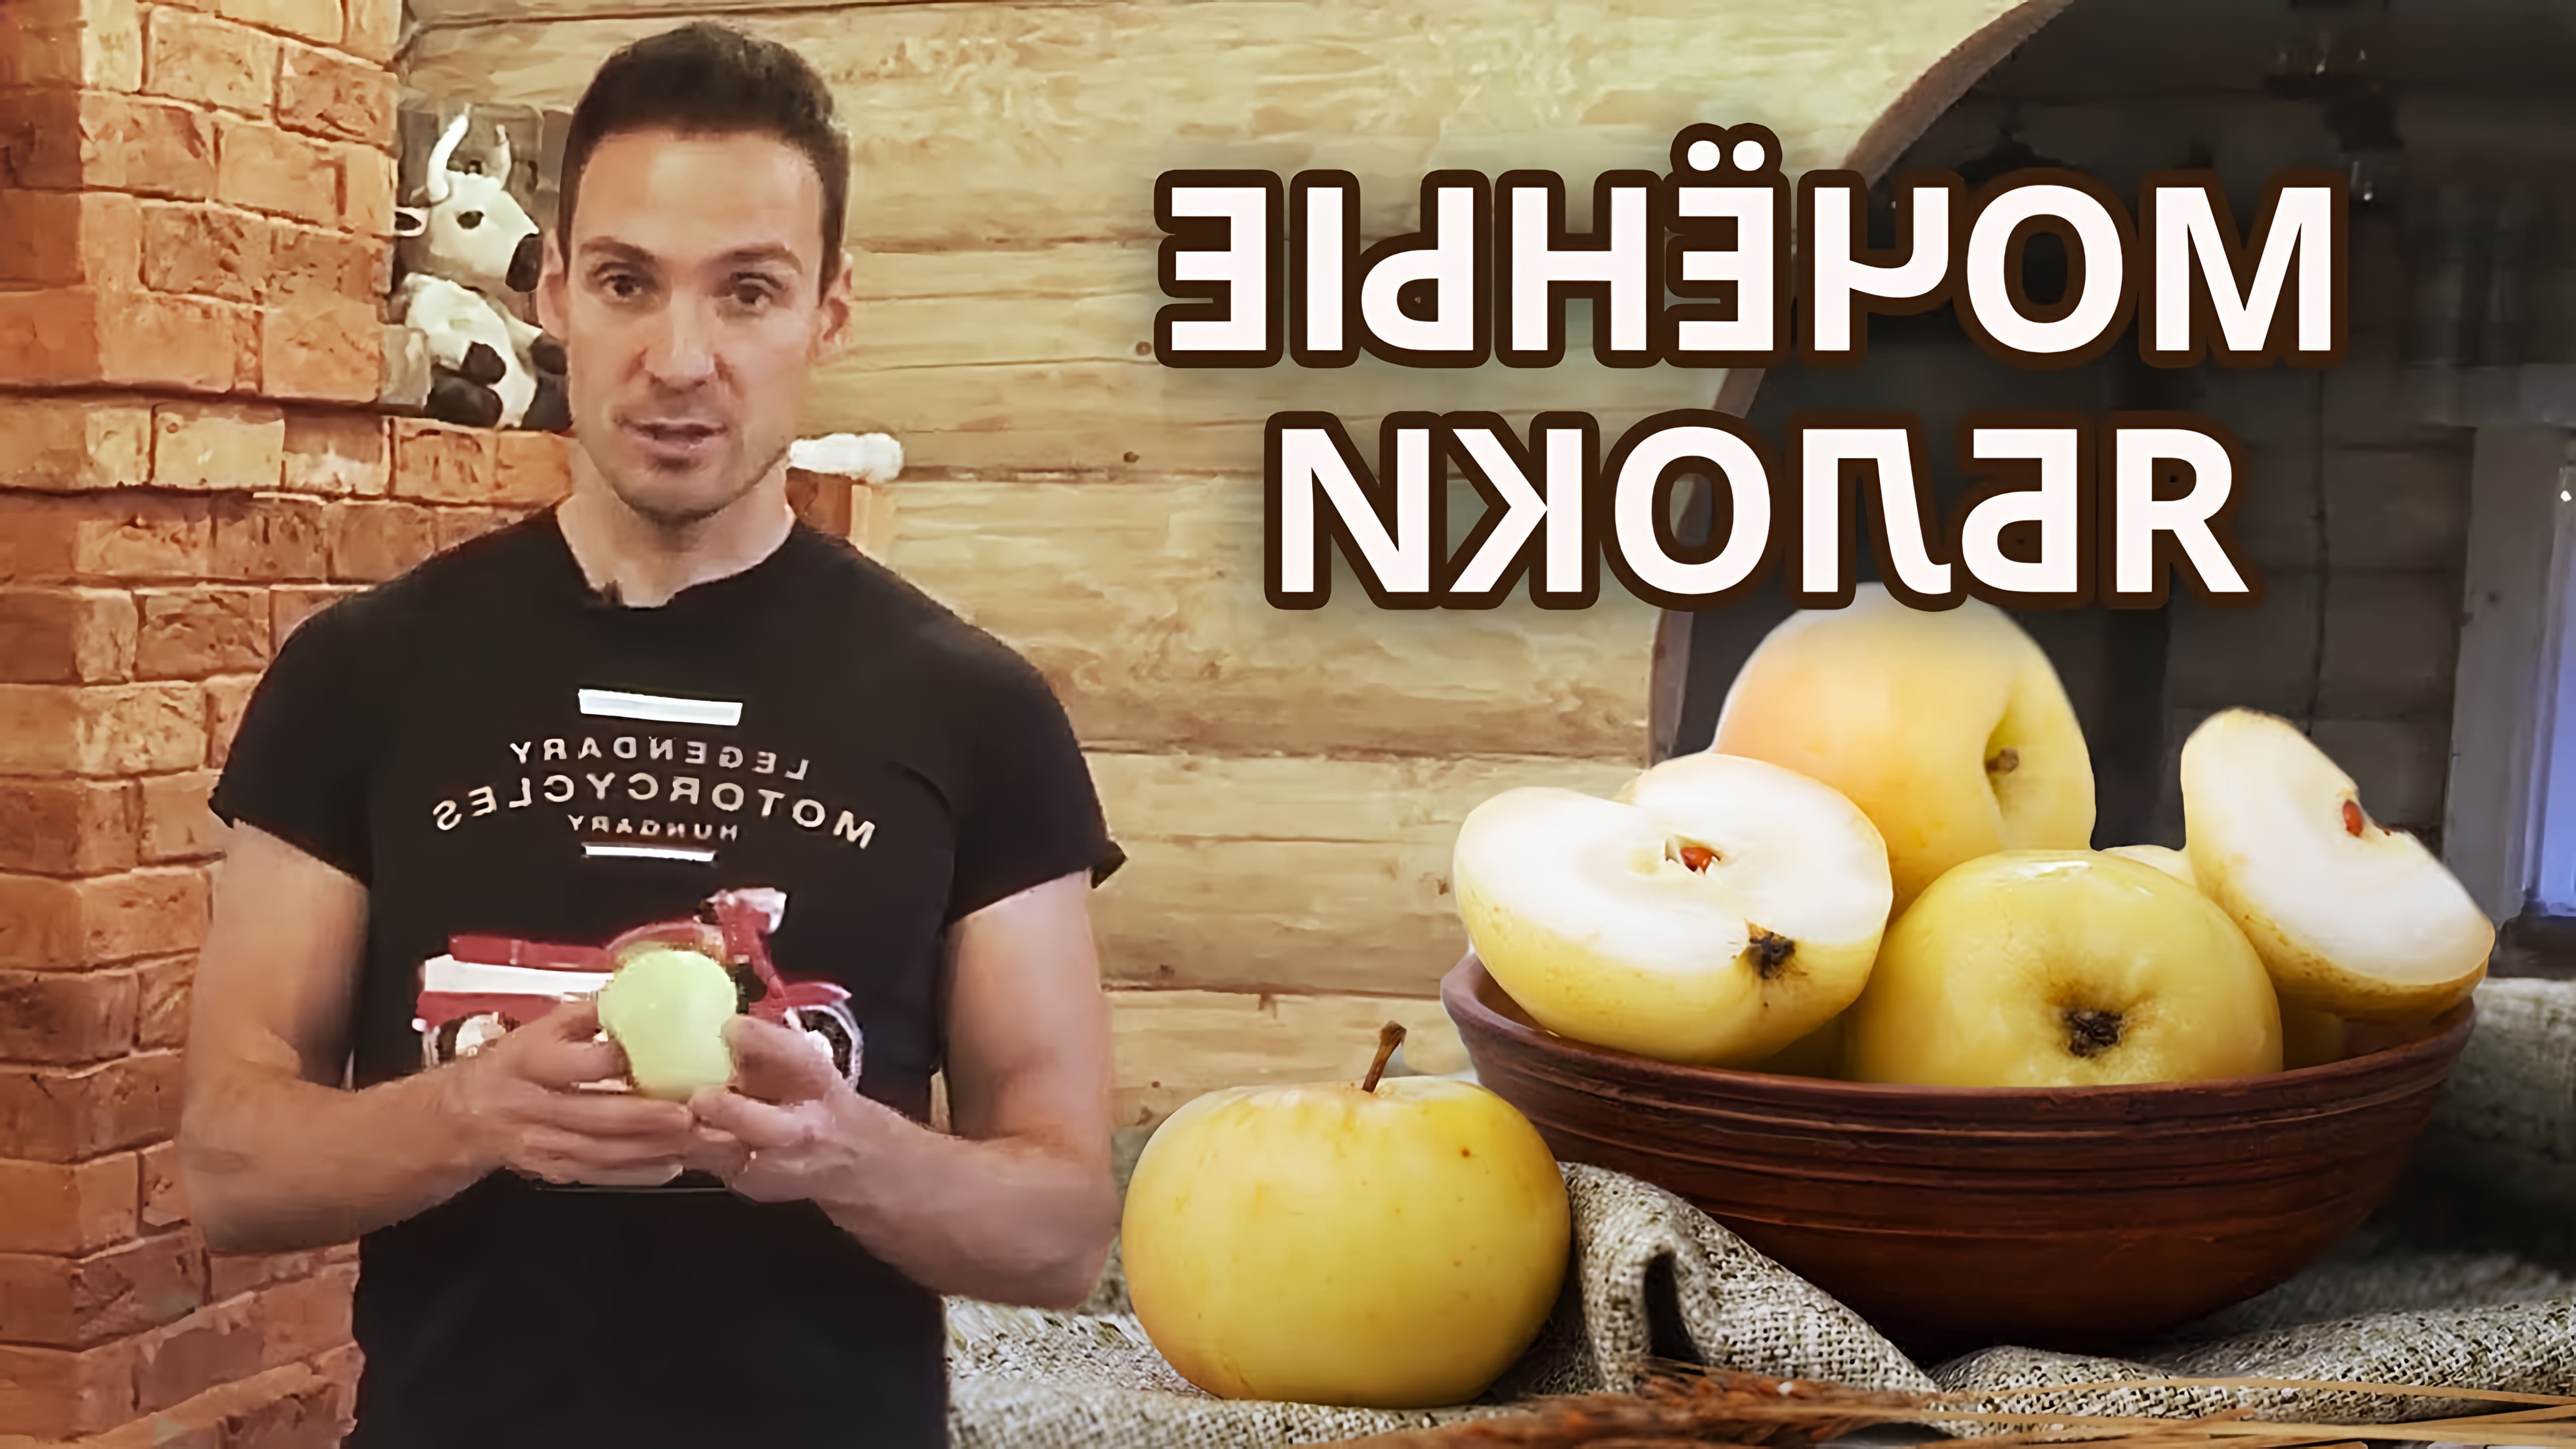 В этом видео рассказывается о простом способе приготовления моченых яблок